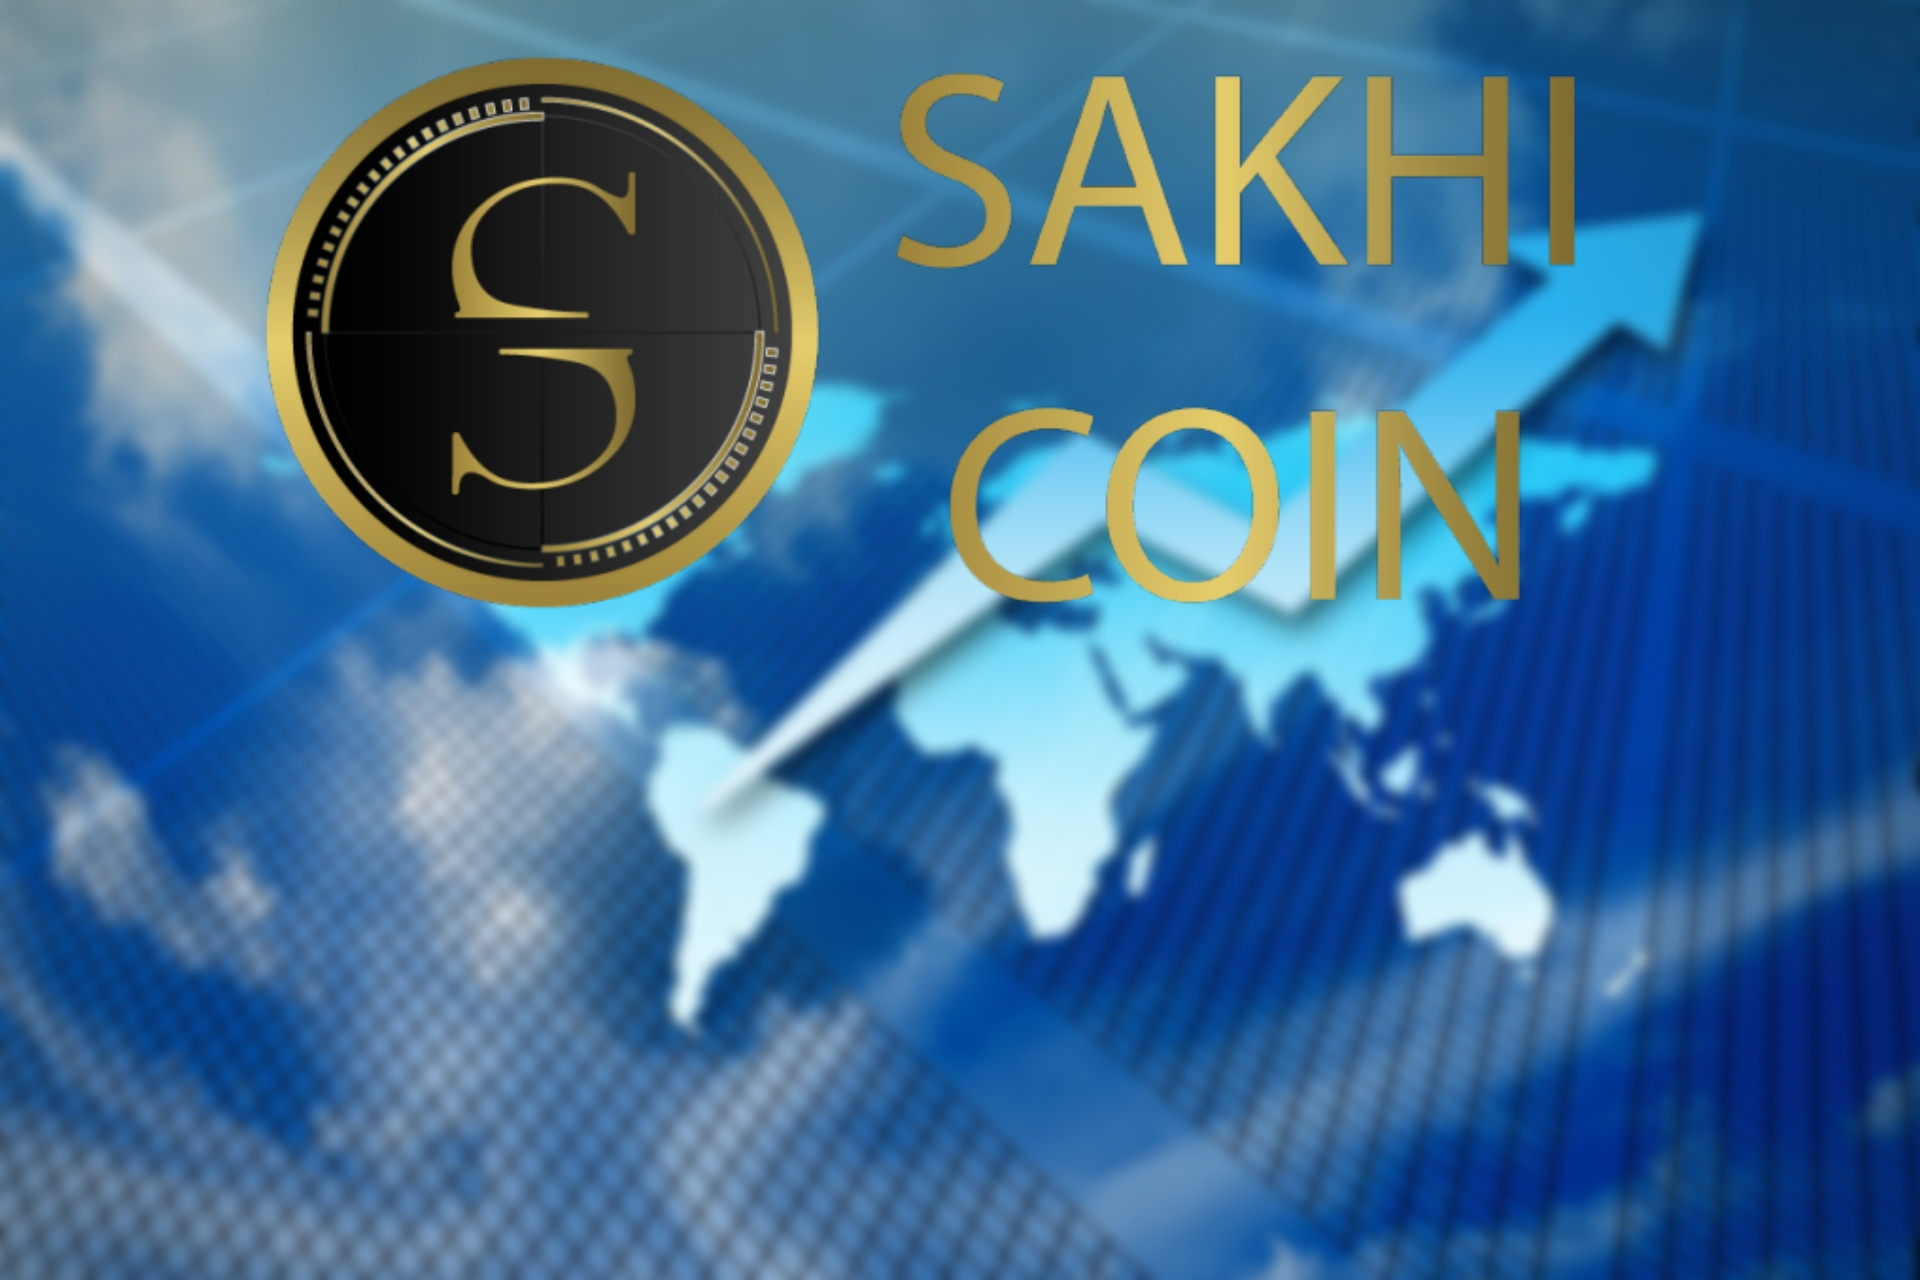 Sakhi Coin